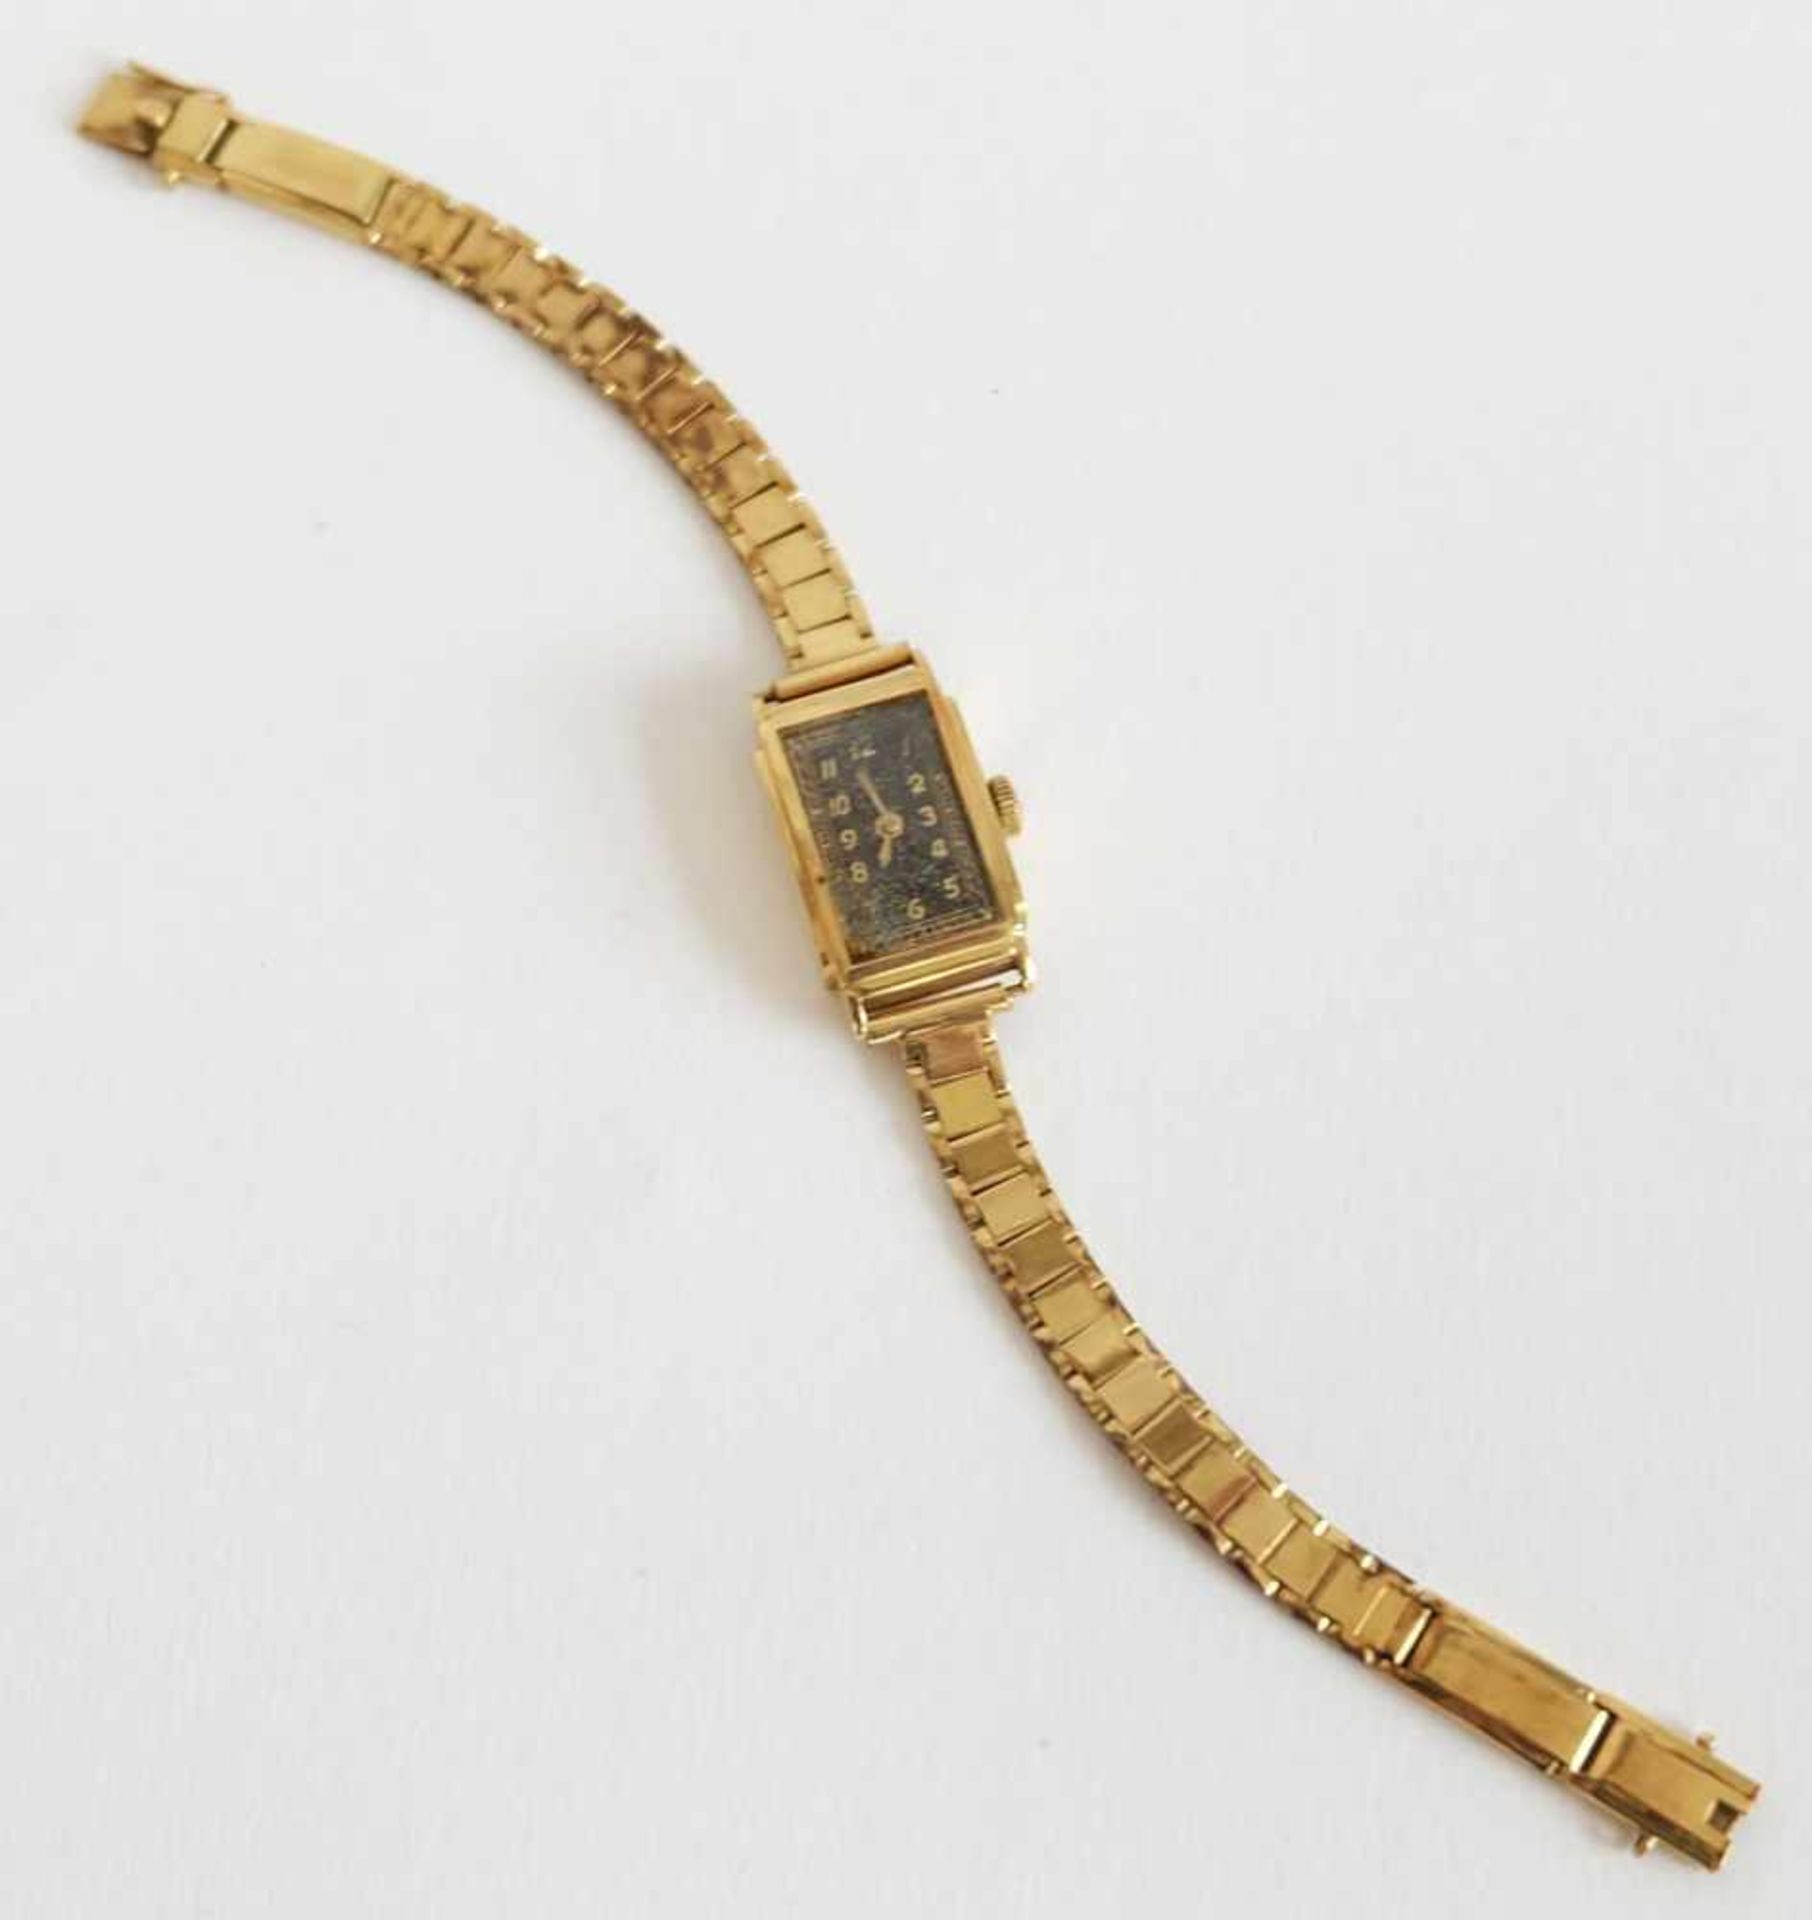 DAU, 1930er-Jahre, 585er-Gelbgold-Gehäuse und -armband, hochrechteckige Form, arabische Indices,